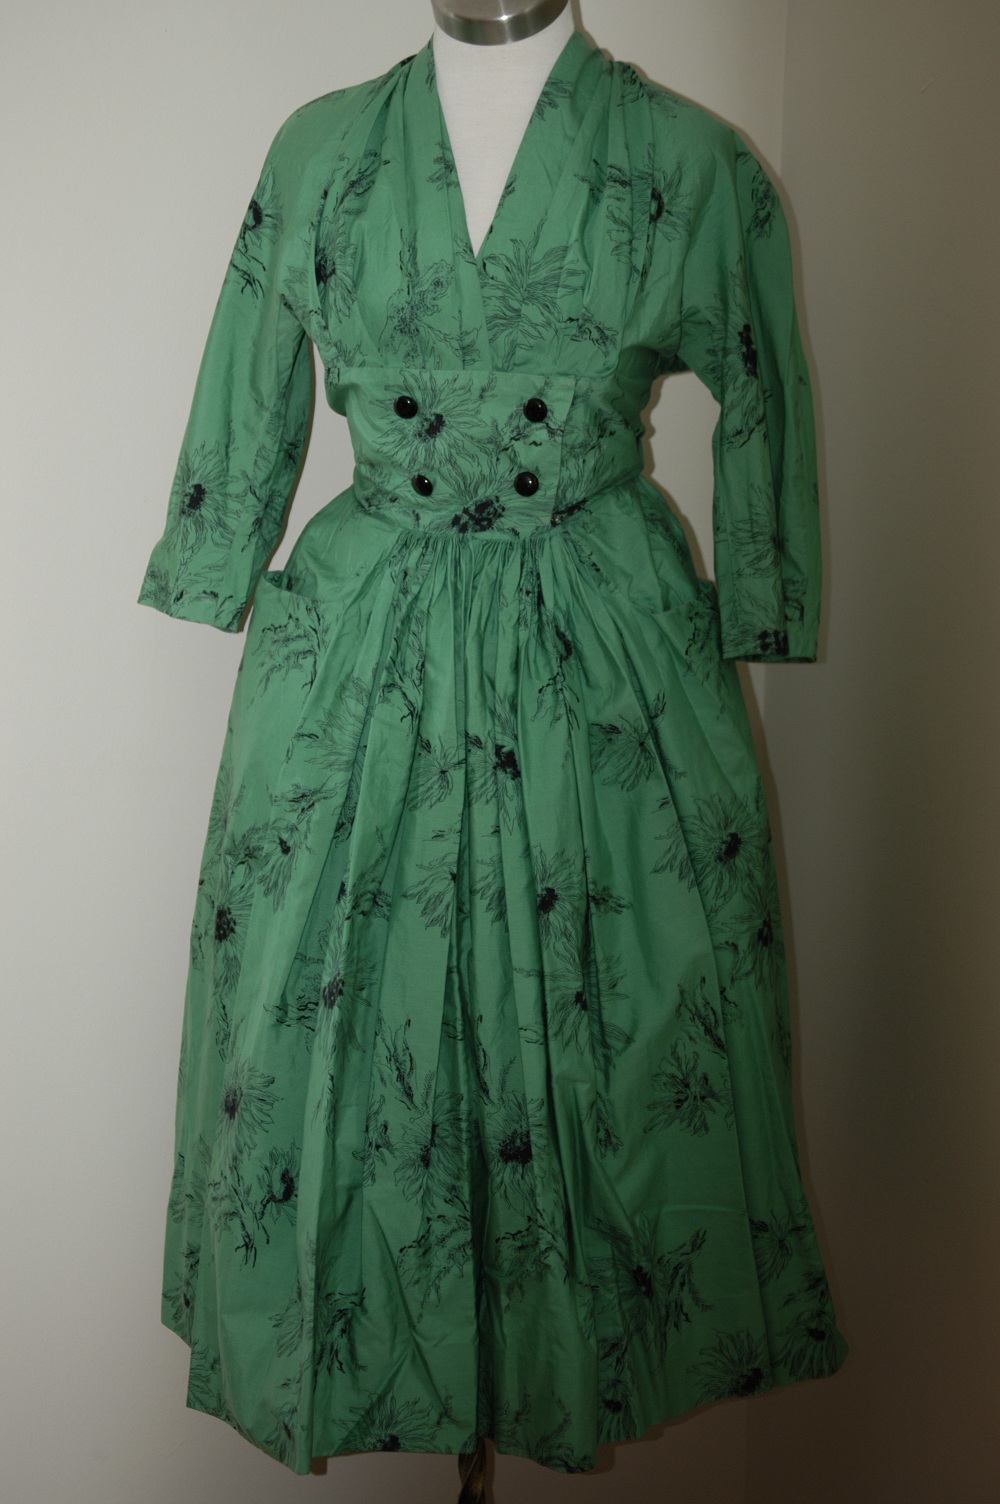 Carrie's Vintage Finds: 1950s Horrockses dresses